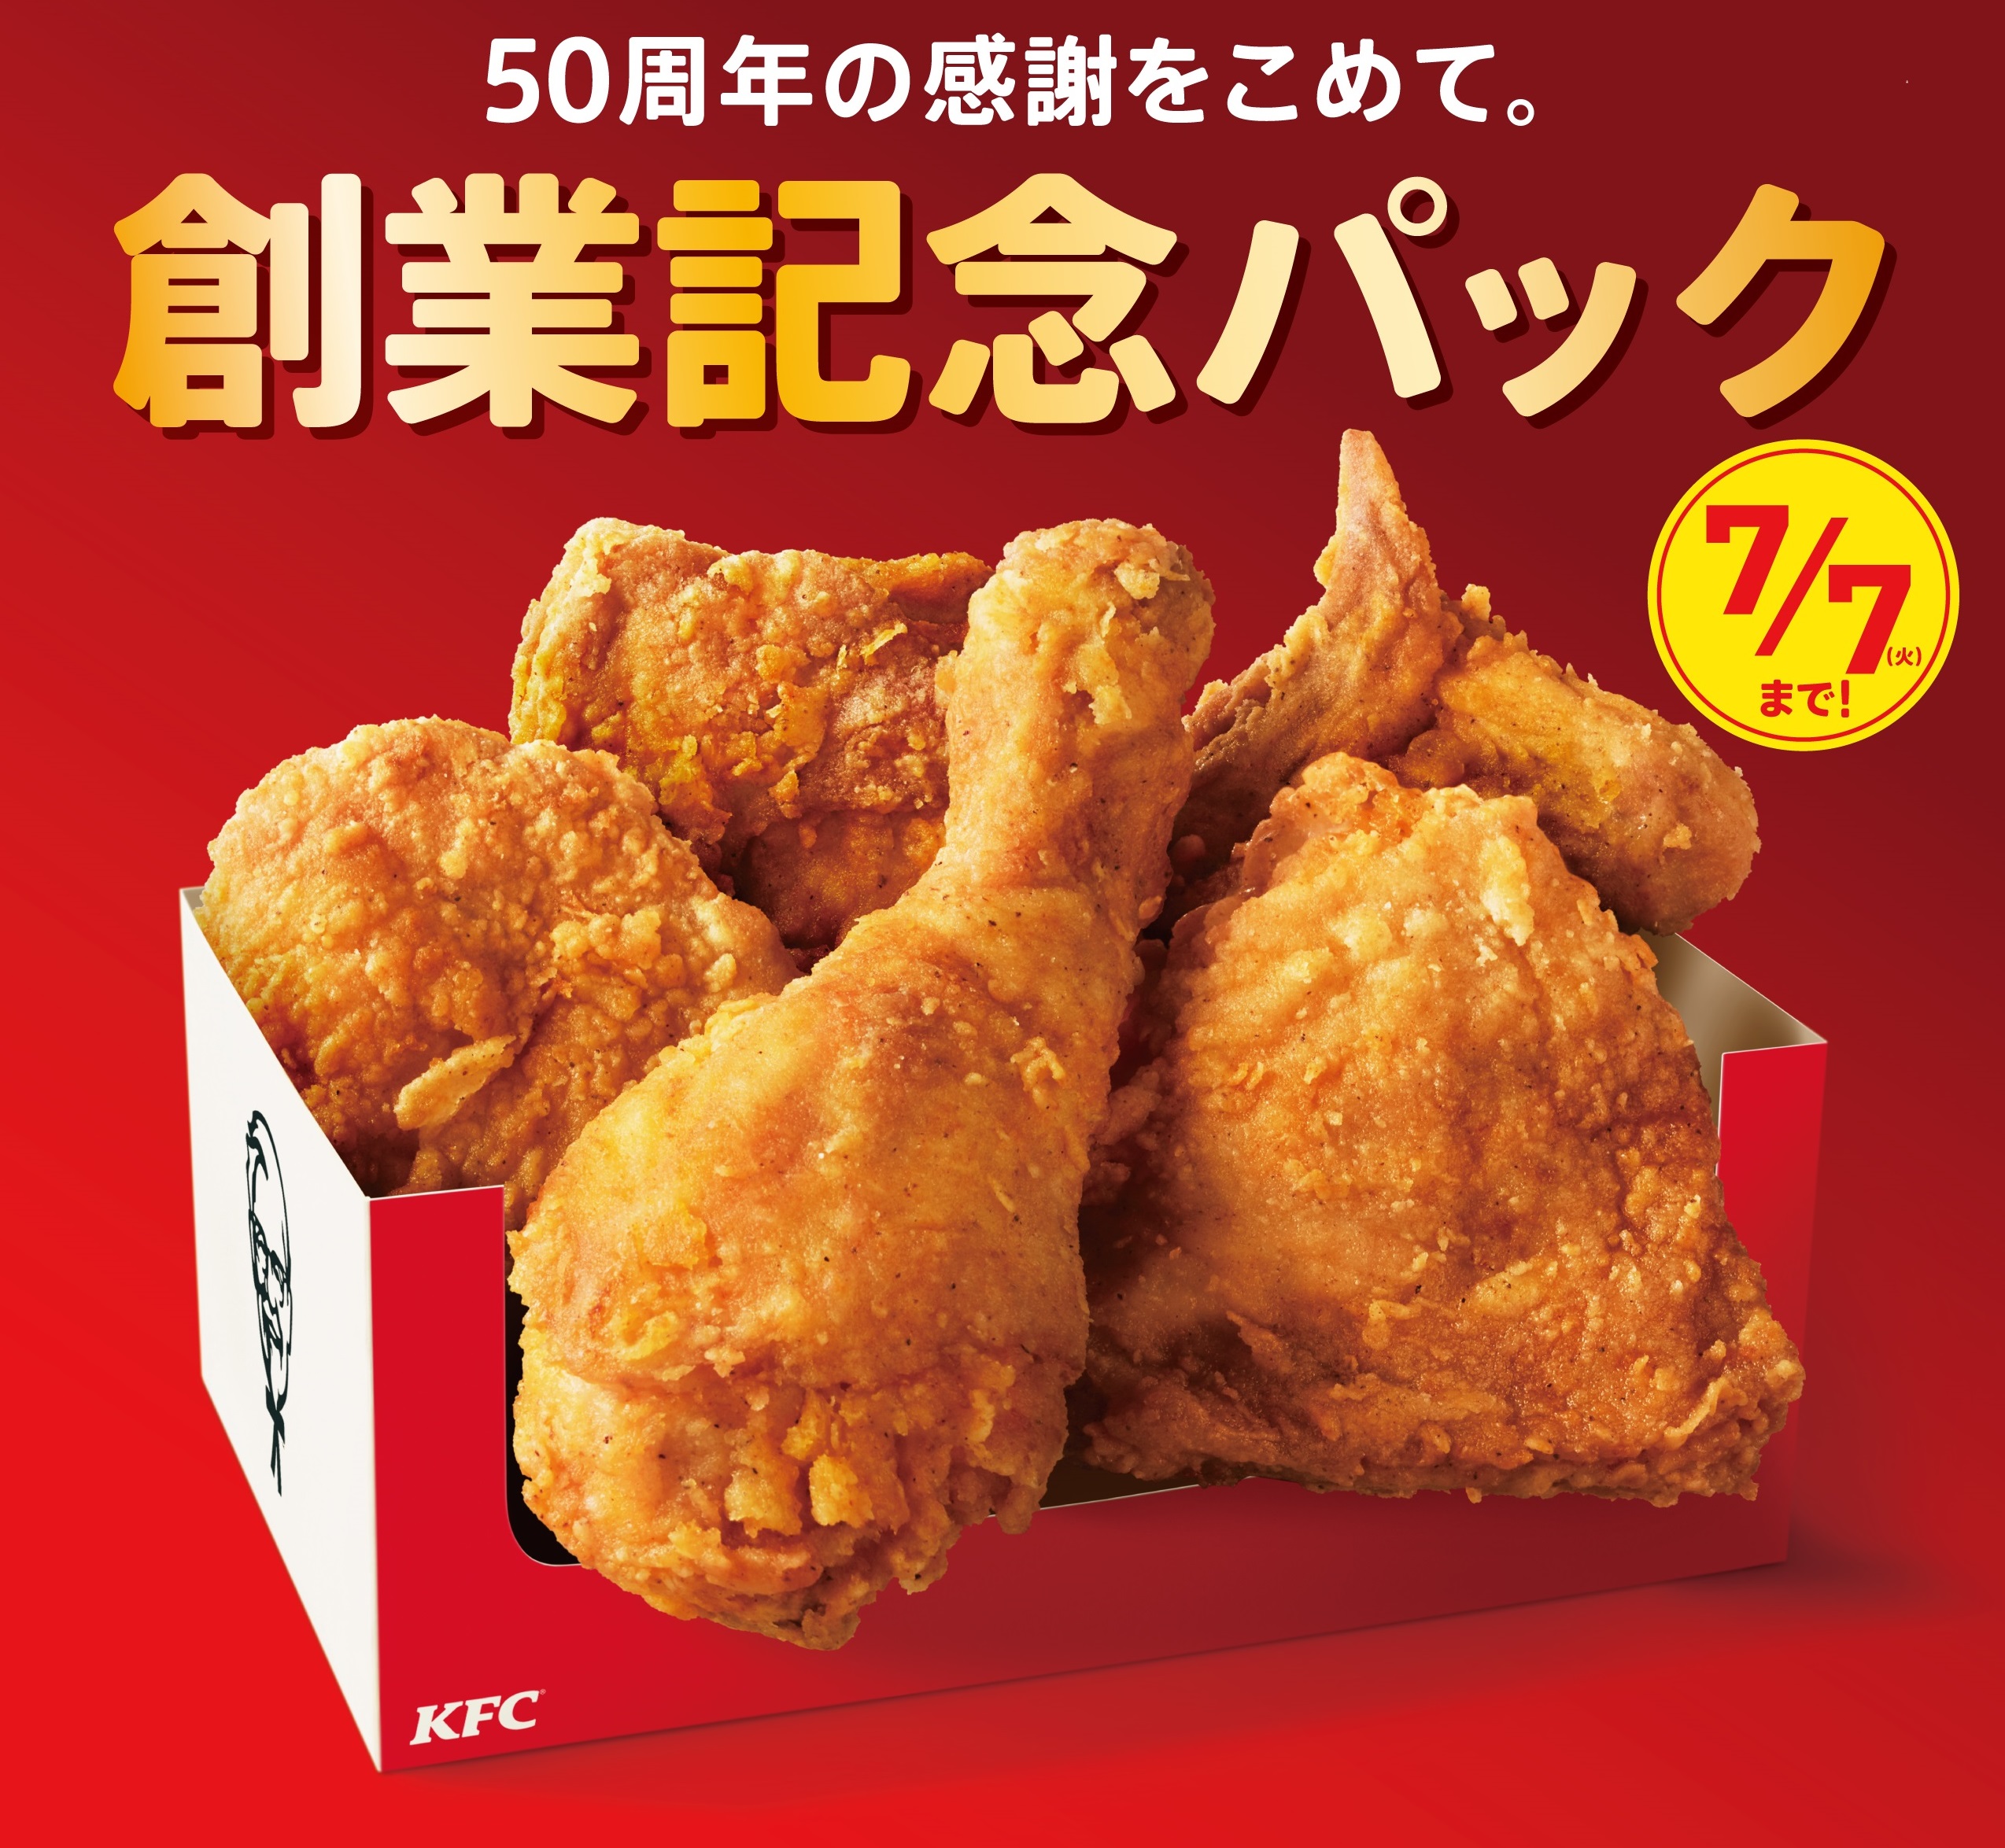 日本KFCは創業50周年。皆さまへの感謝を込めて。 誰にも真似できない